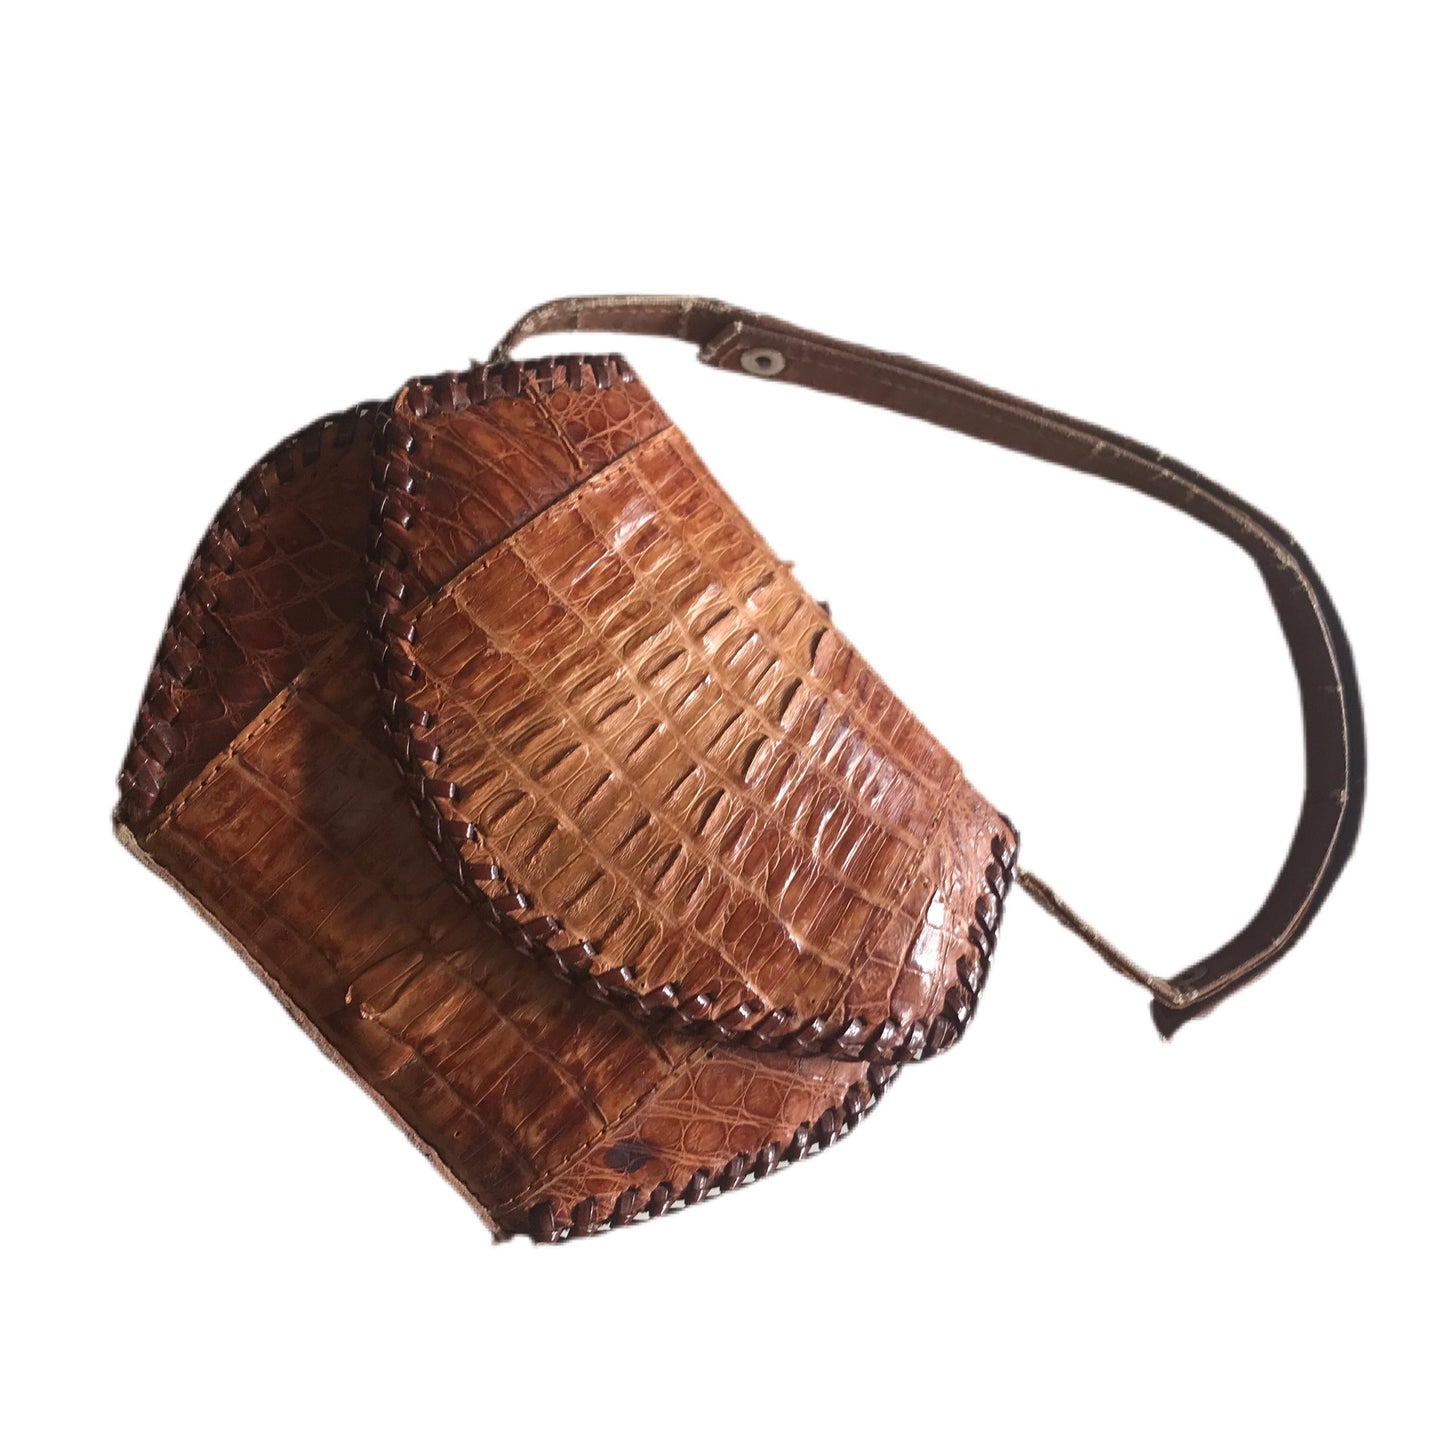 Mini Tobacco Brown Alligator Handbag circa 1940s